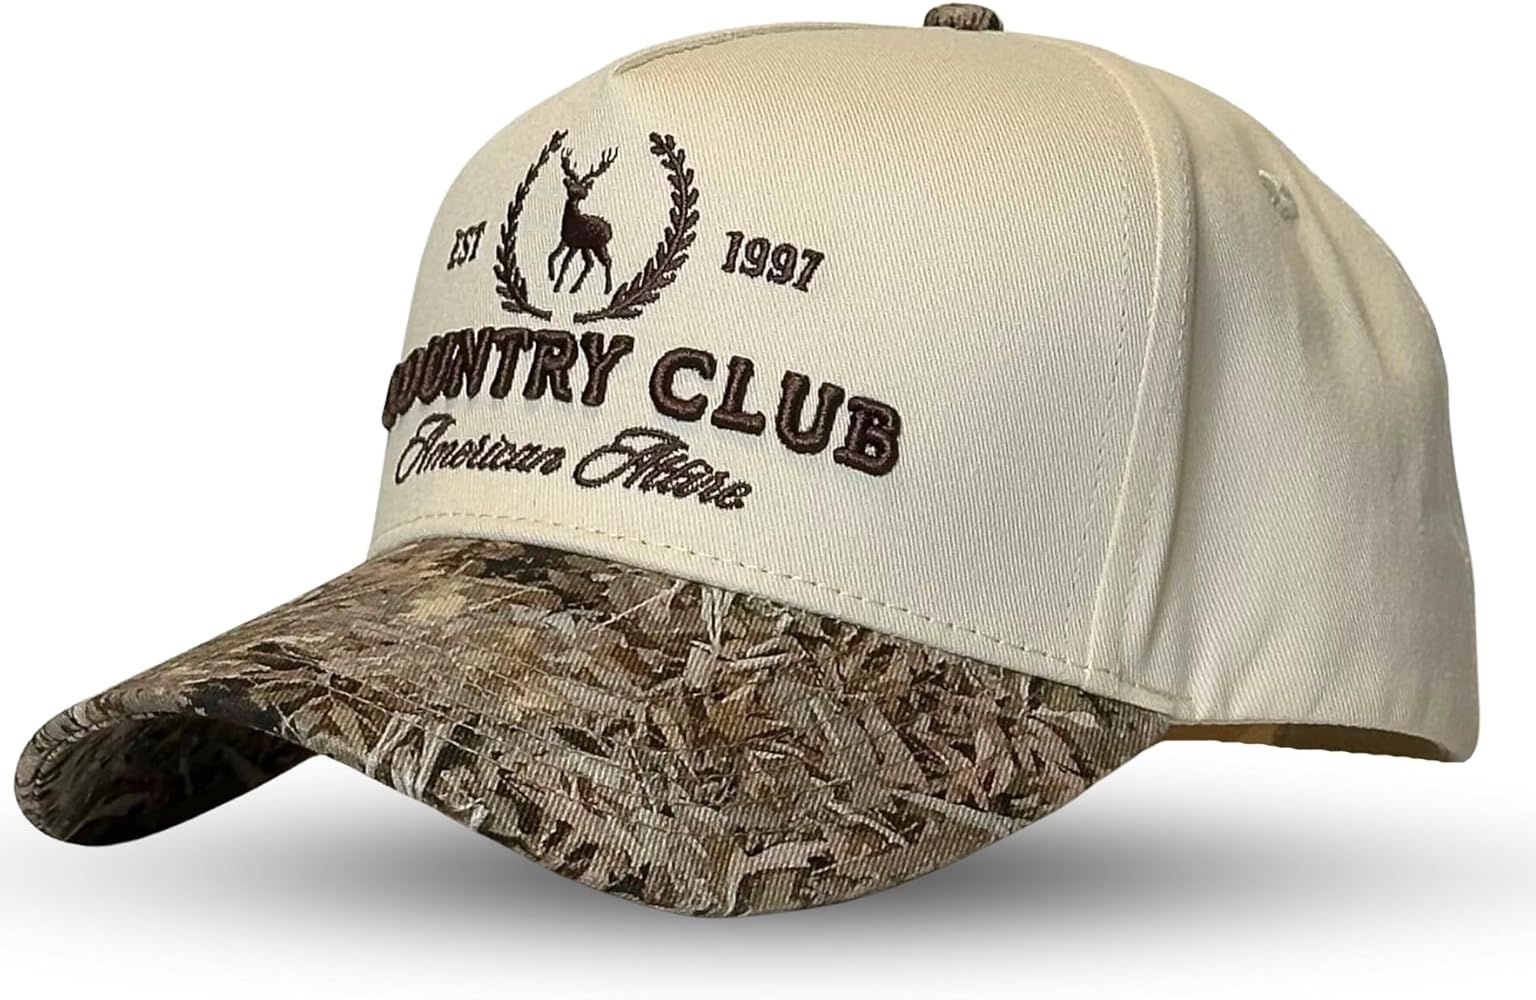 Vintage Trucker Hat | Country Cowboy Cute Preppy Retro Western Trucker Hats | Men Women Trendy Sn... | Amazon (US)